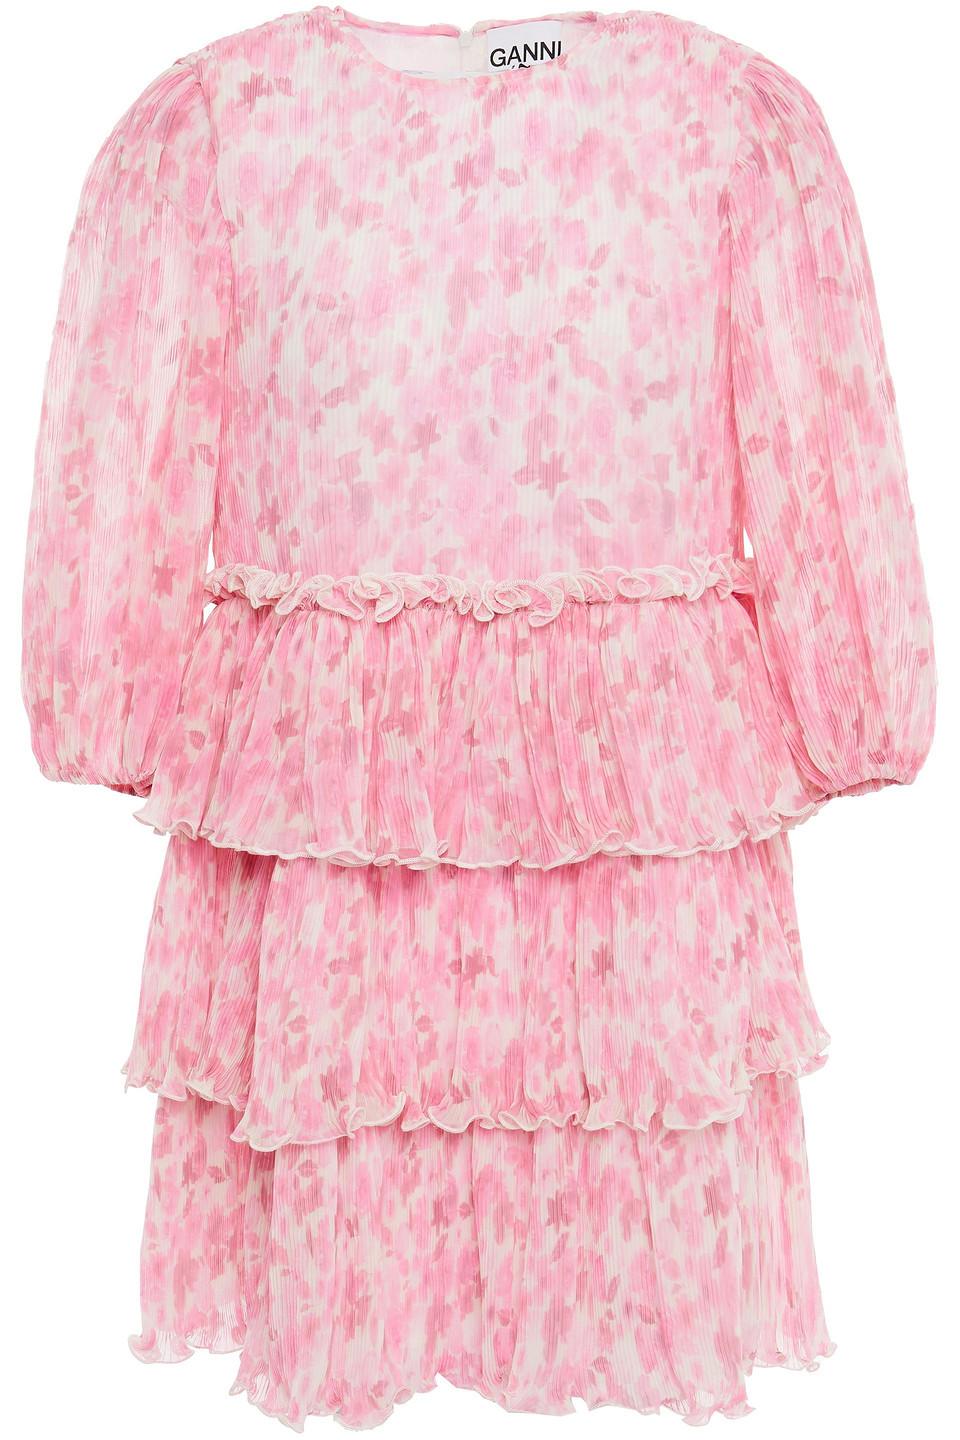 Ganni Tiered Floral-print Plissé-georgette Mini Dress in Pink | Lyst